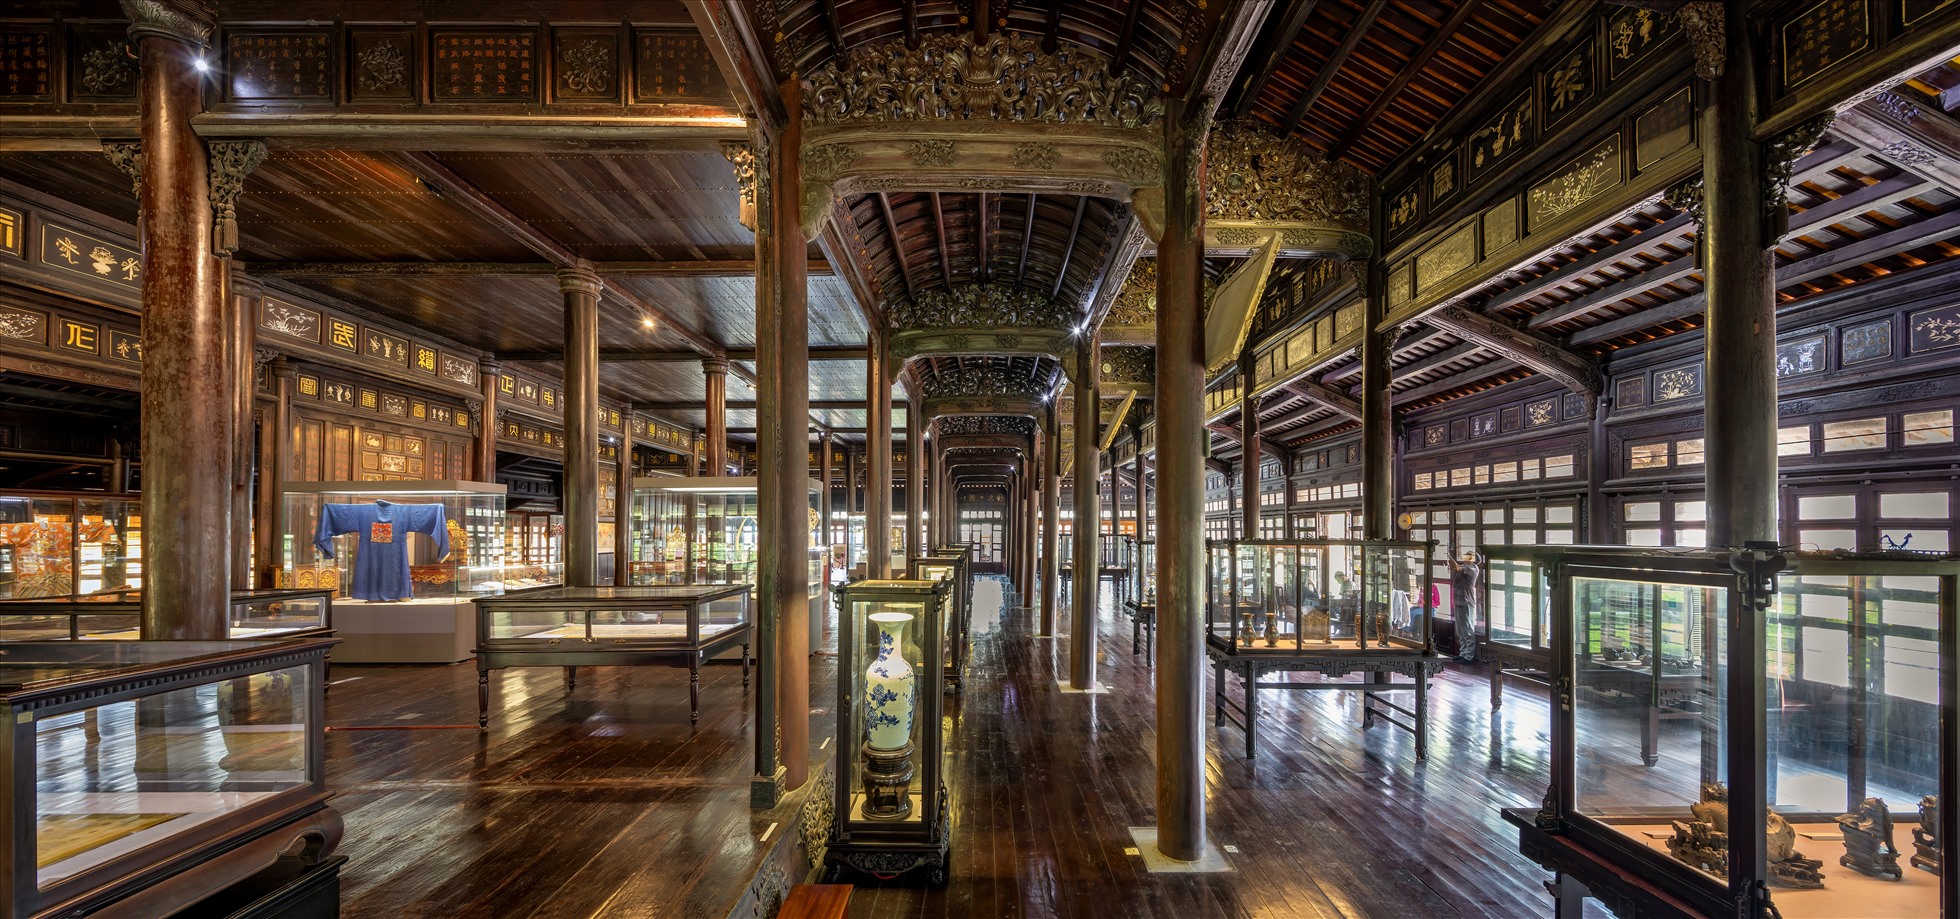 Trưng bày tại nội điện Long An, Bảo tàng Cổ vật Cung đình Huế. Ảnh: Nguyễn Tấn Anh Phong.